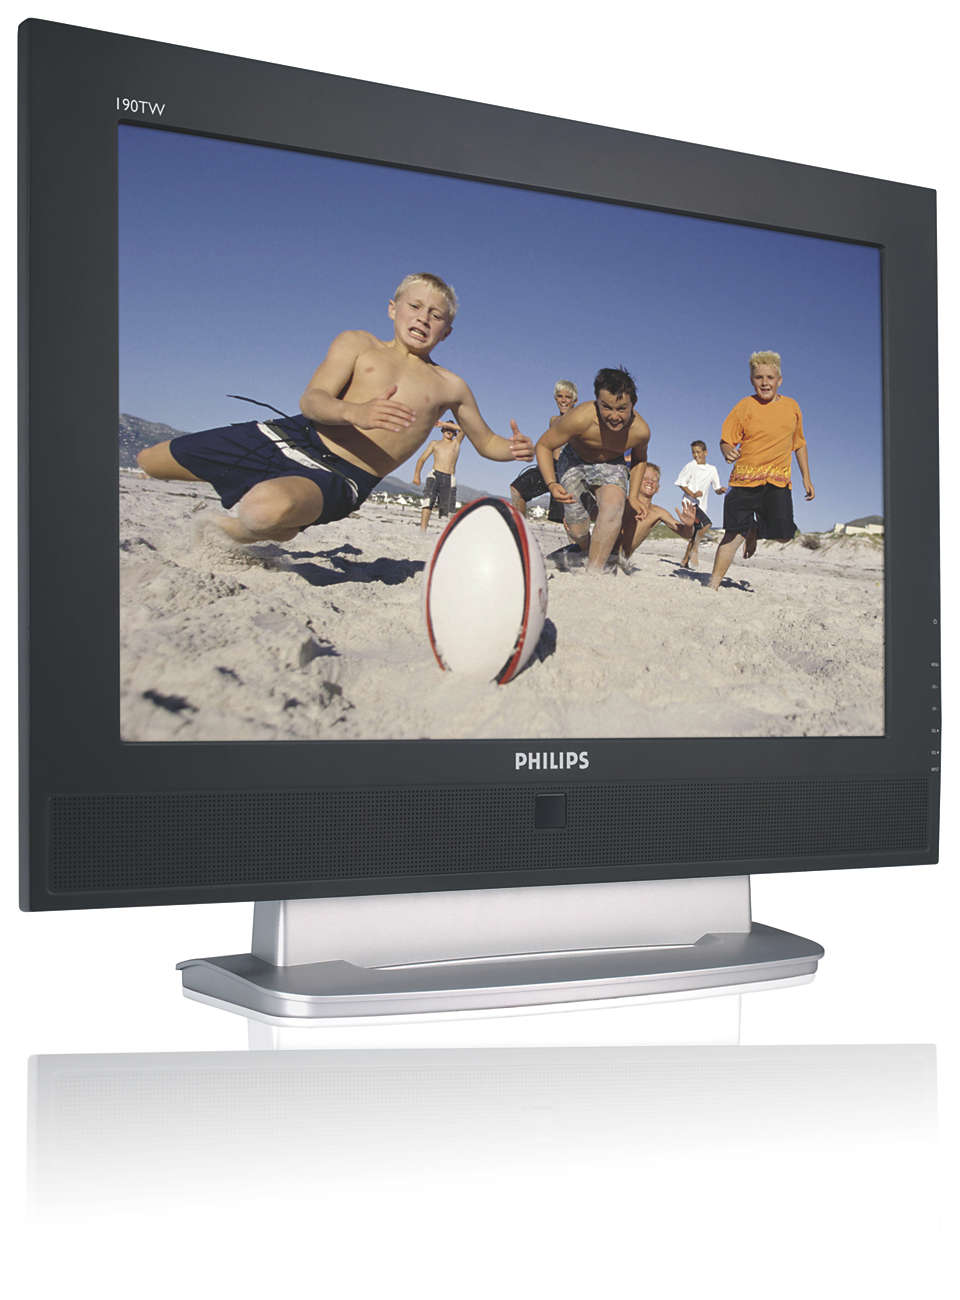 LCD-monitor/TV-combi met groot aantal functies